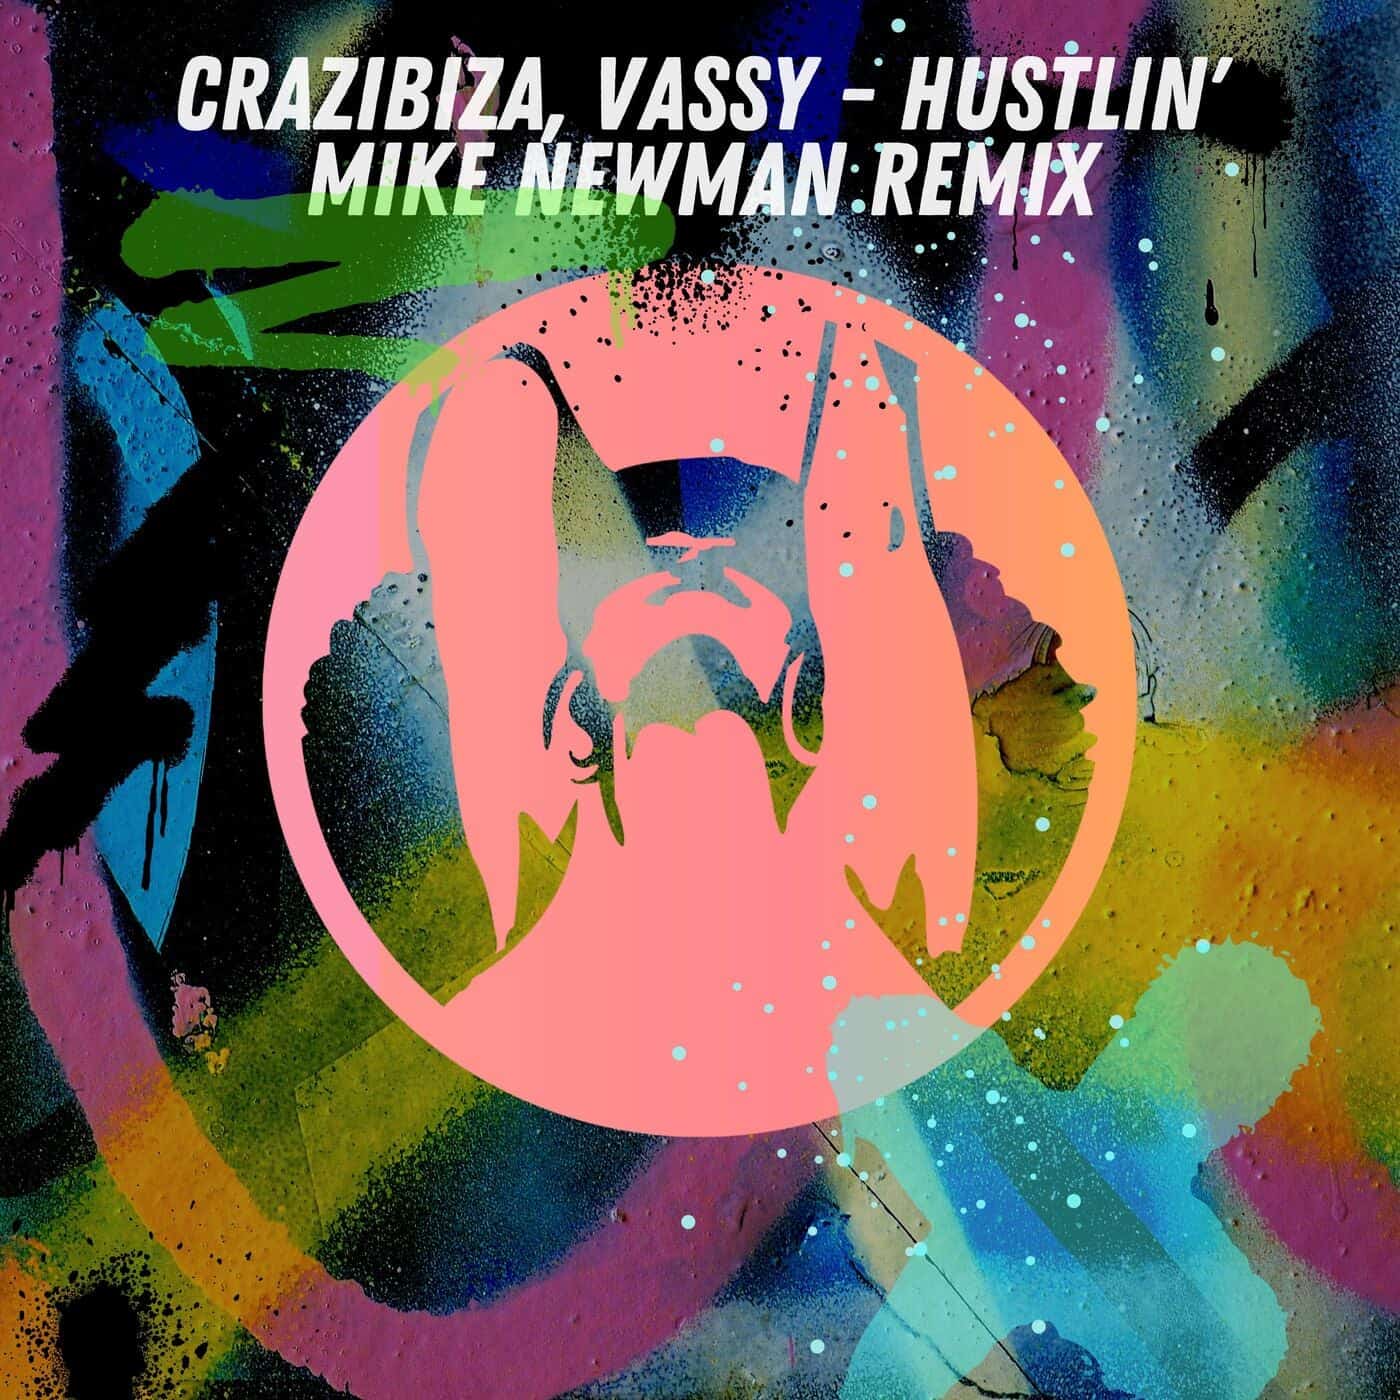 image cover: Crazibiza, VASSY - Crazibiza, Vassy - Hustlin' ( Mike Newman Remix ) / PR922